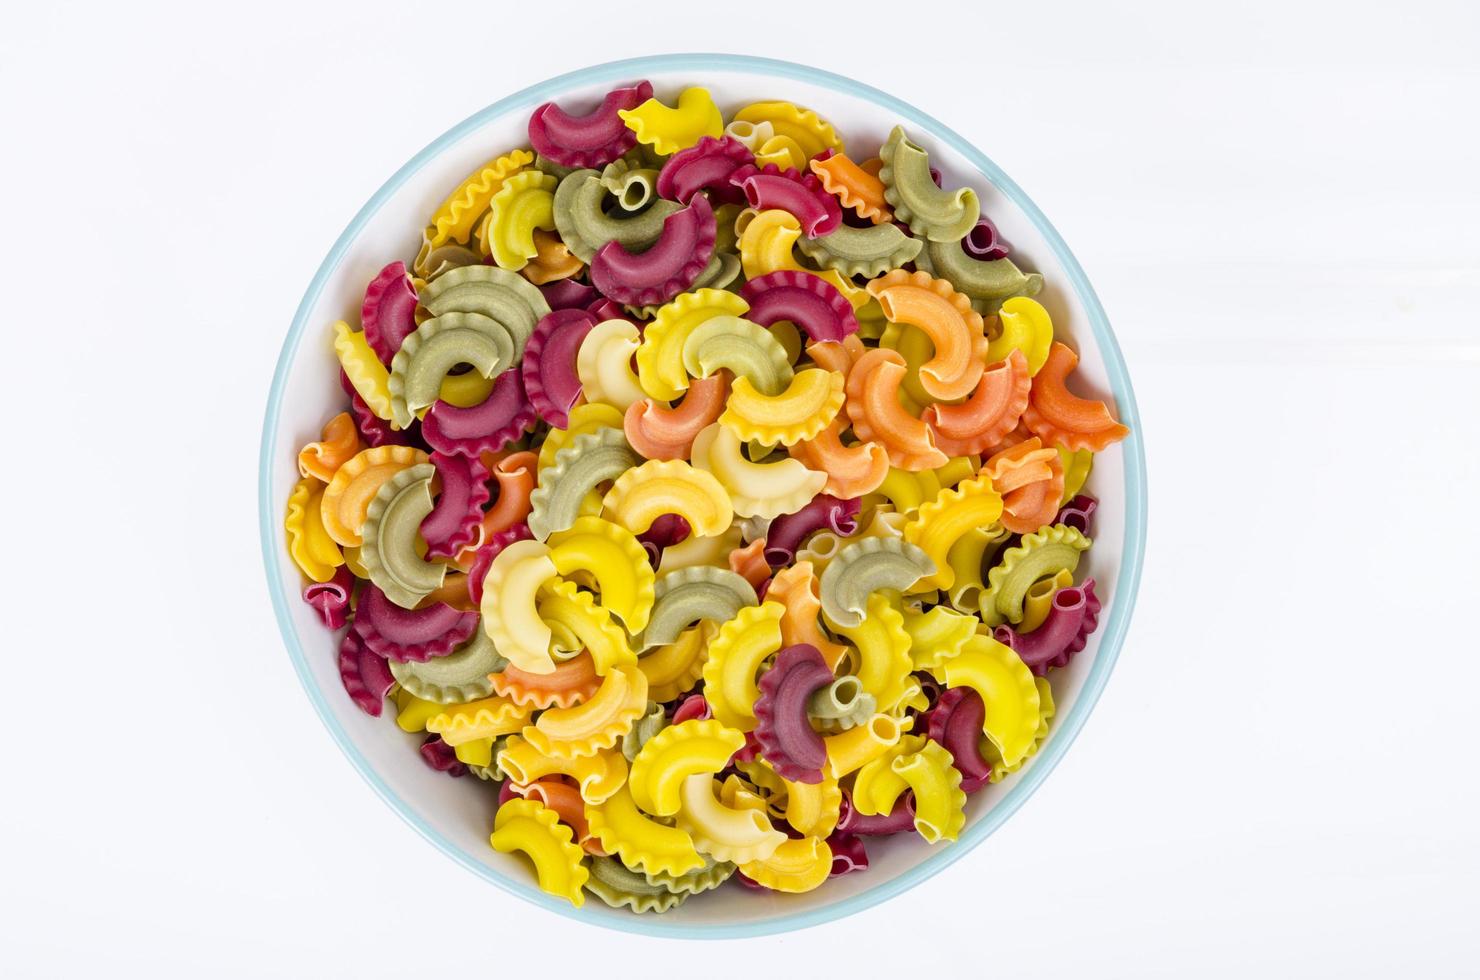 pasta colorata con aggiunta di coloranti naturali vegetali, alimentazione sana. foto in studio.